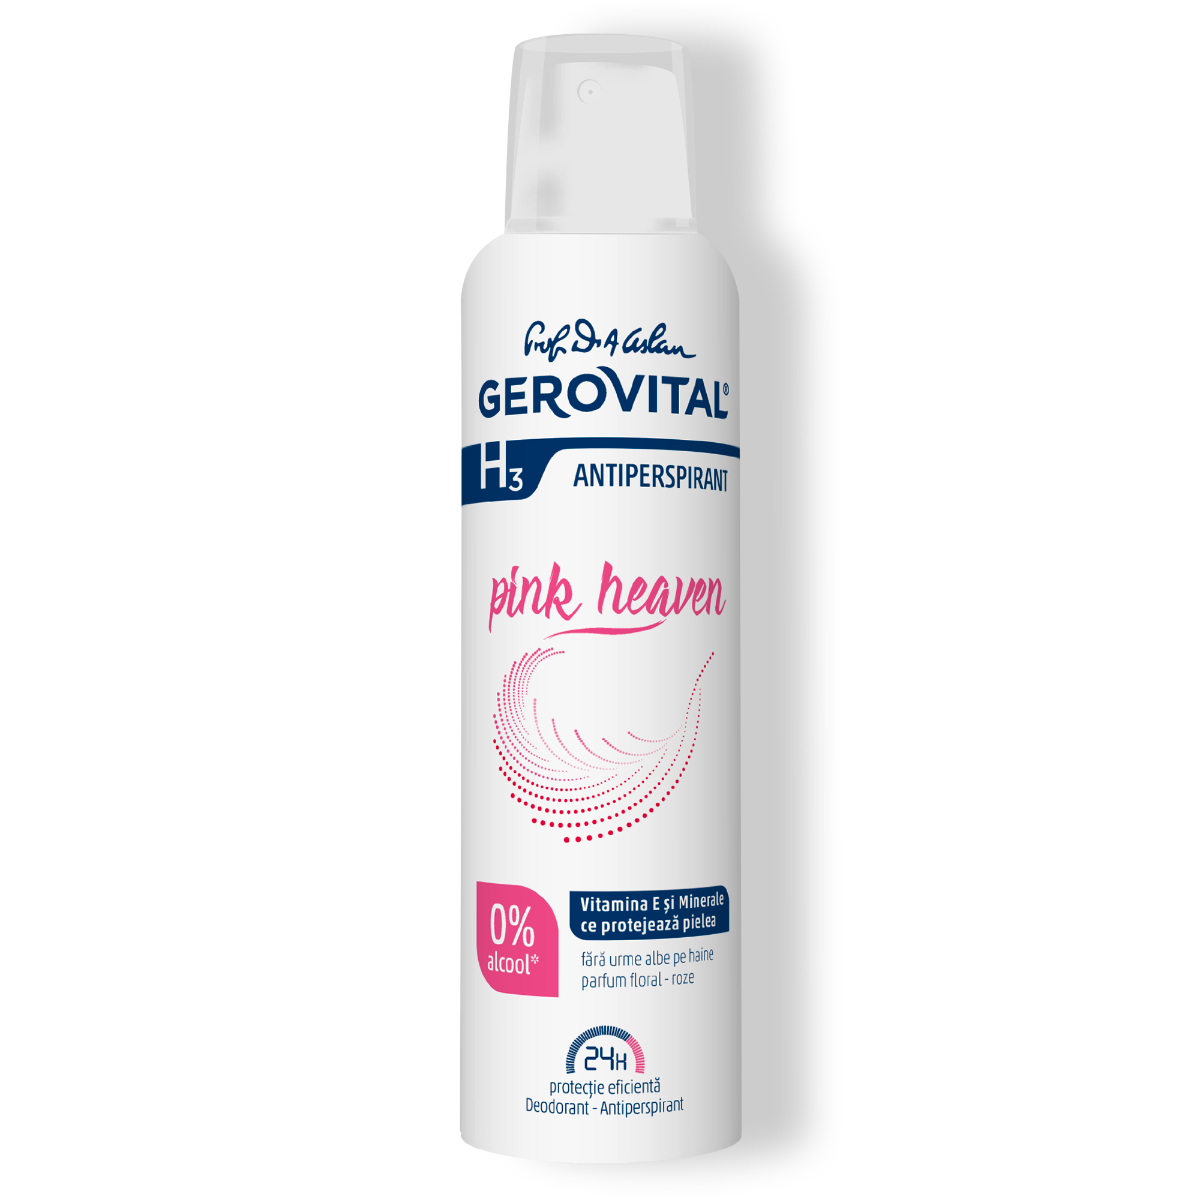 Deodorant antiperspirant pink heaven 150 ml gerovital h3